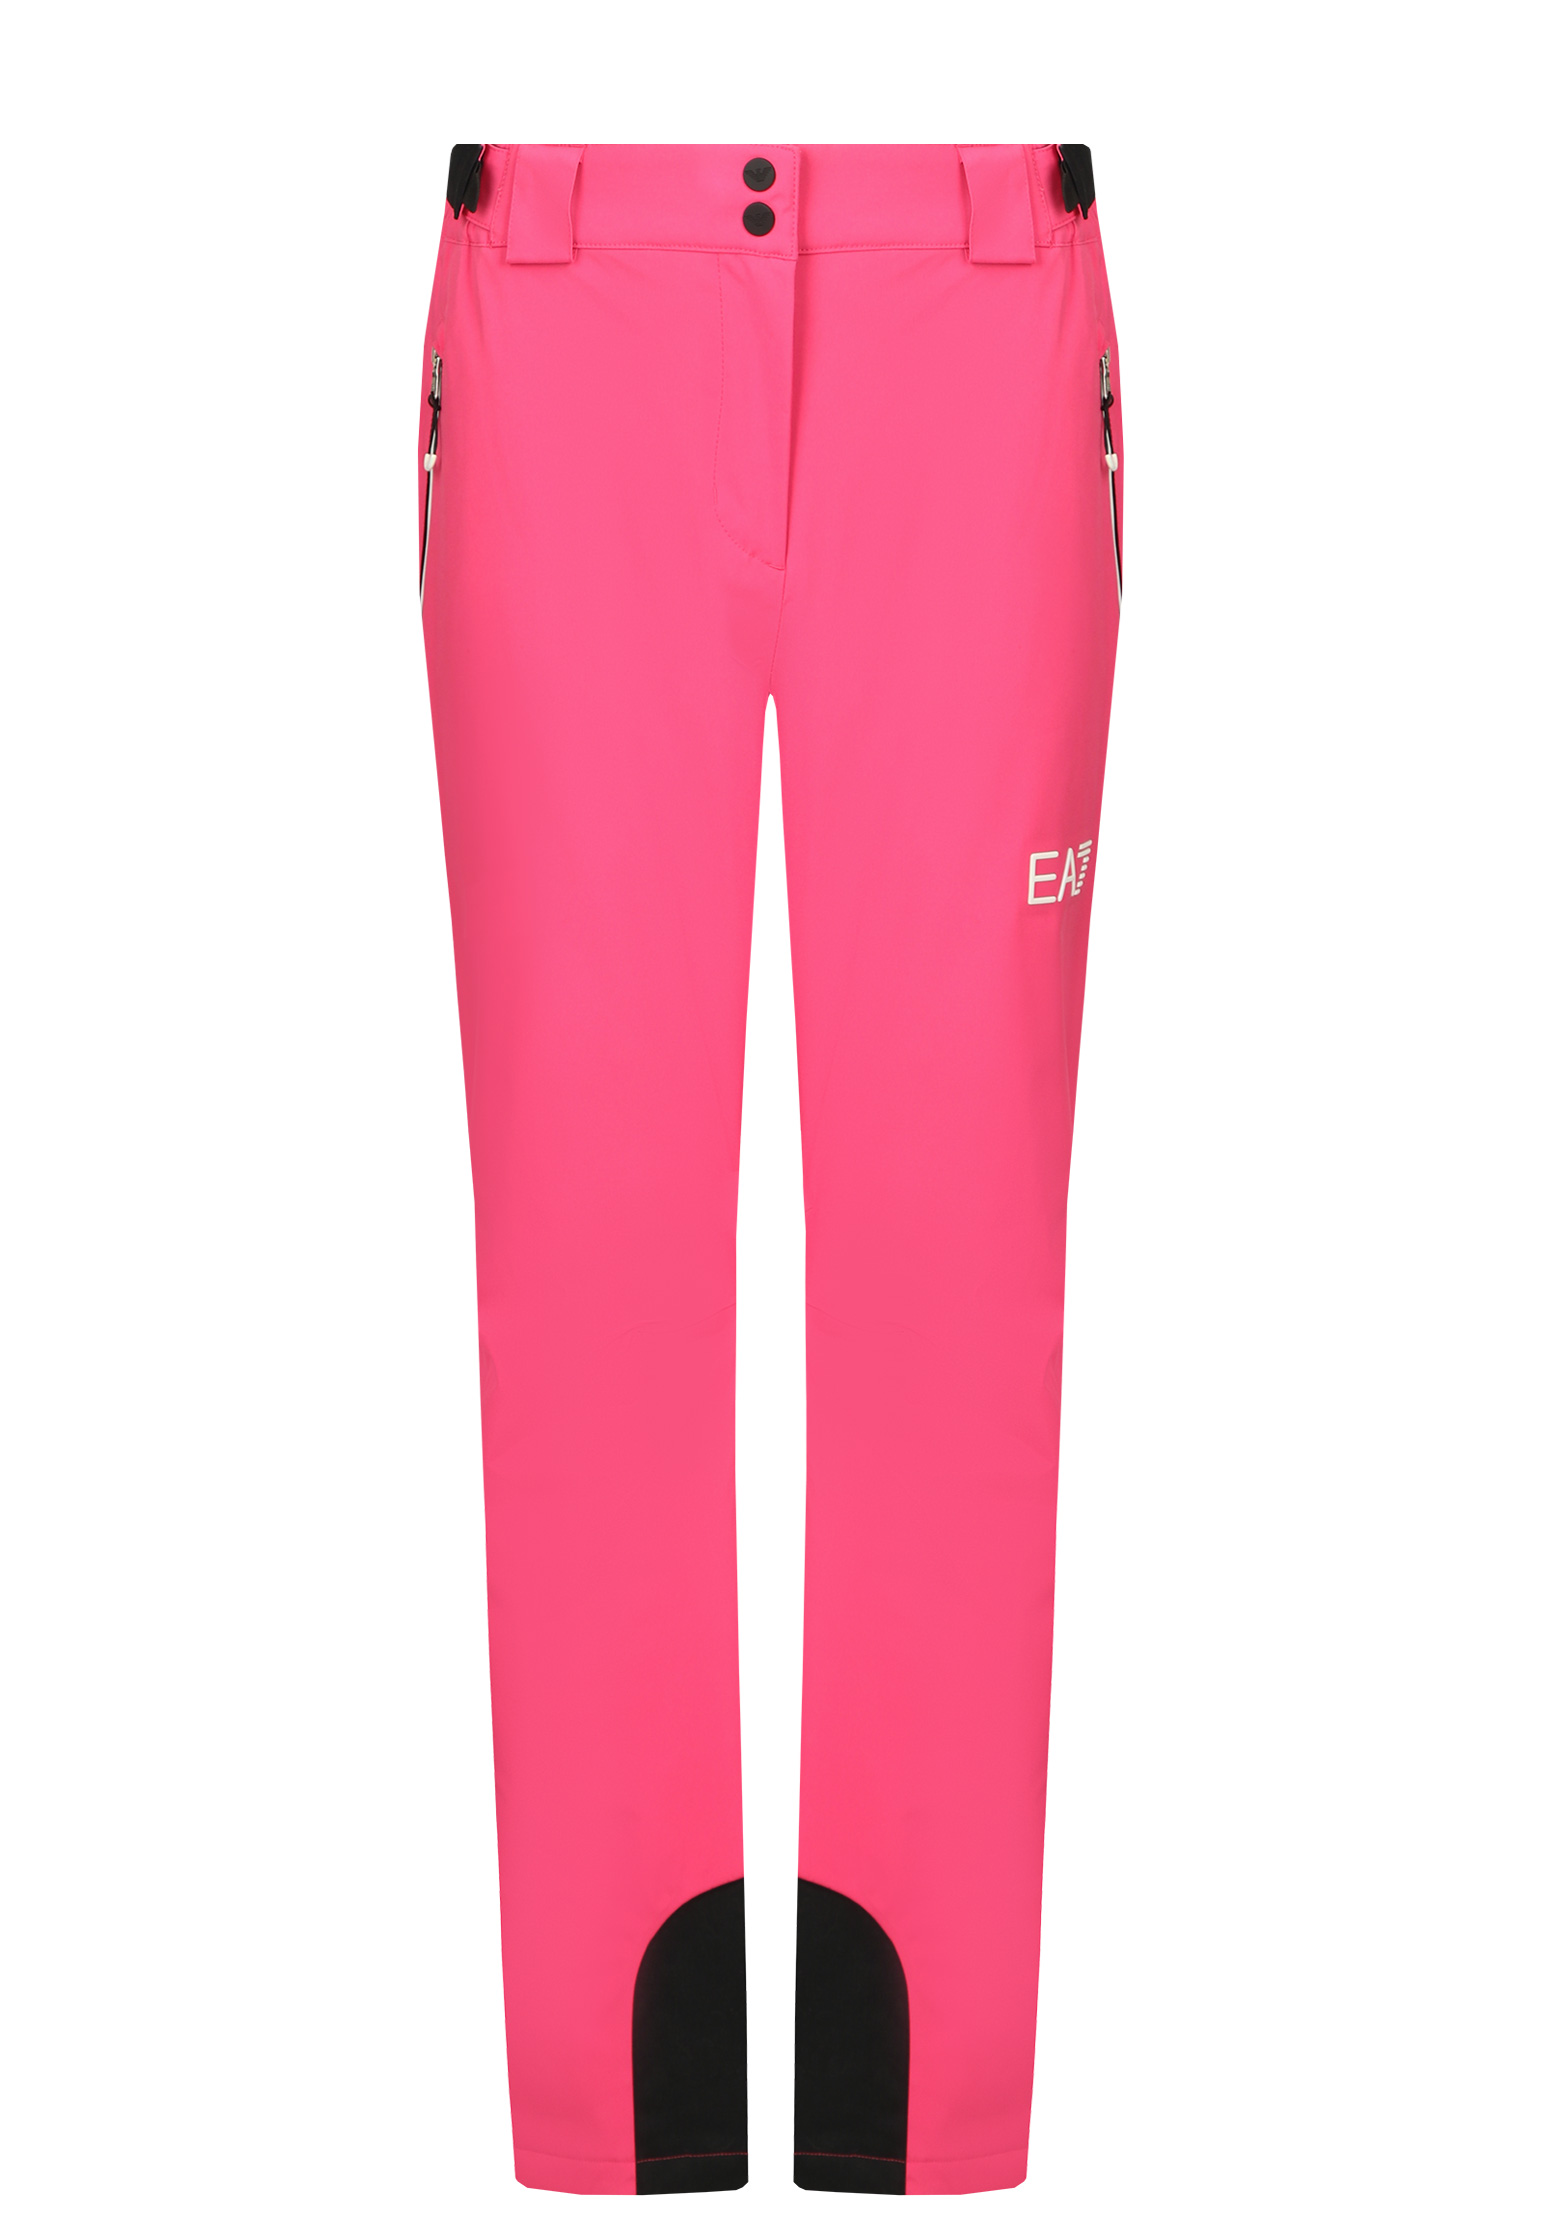 Спортивные брюки женские EA7 146322 розовые M